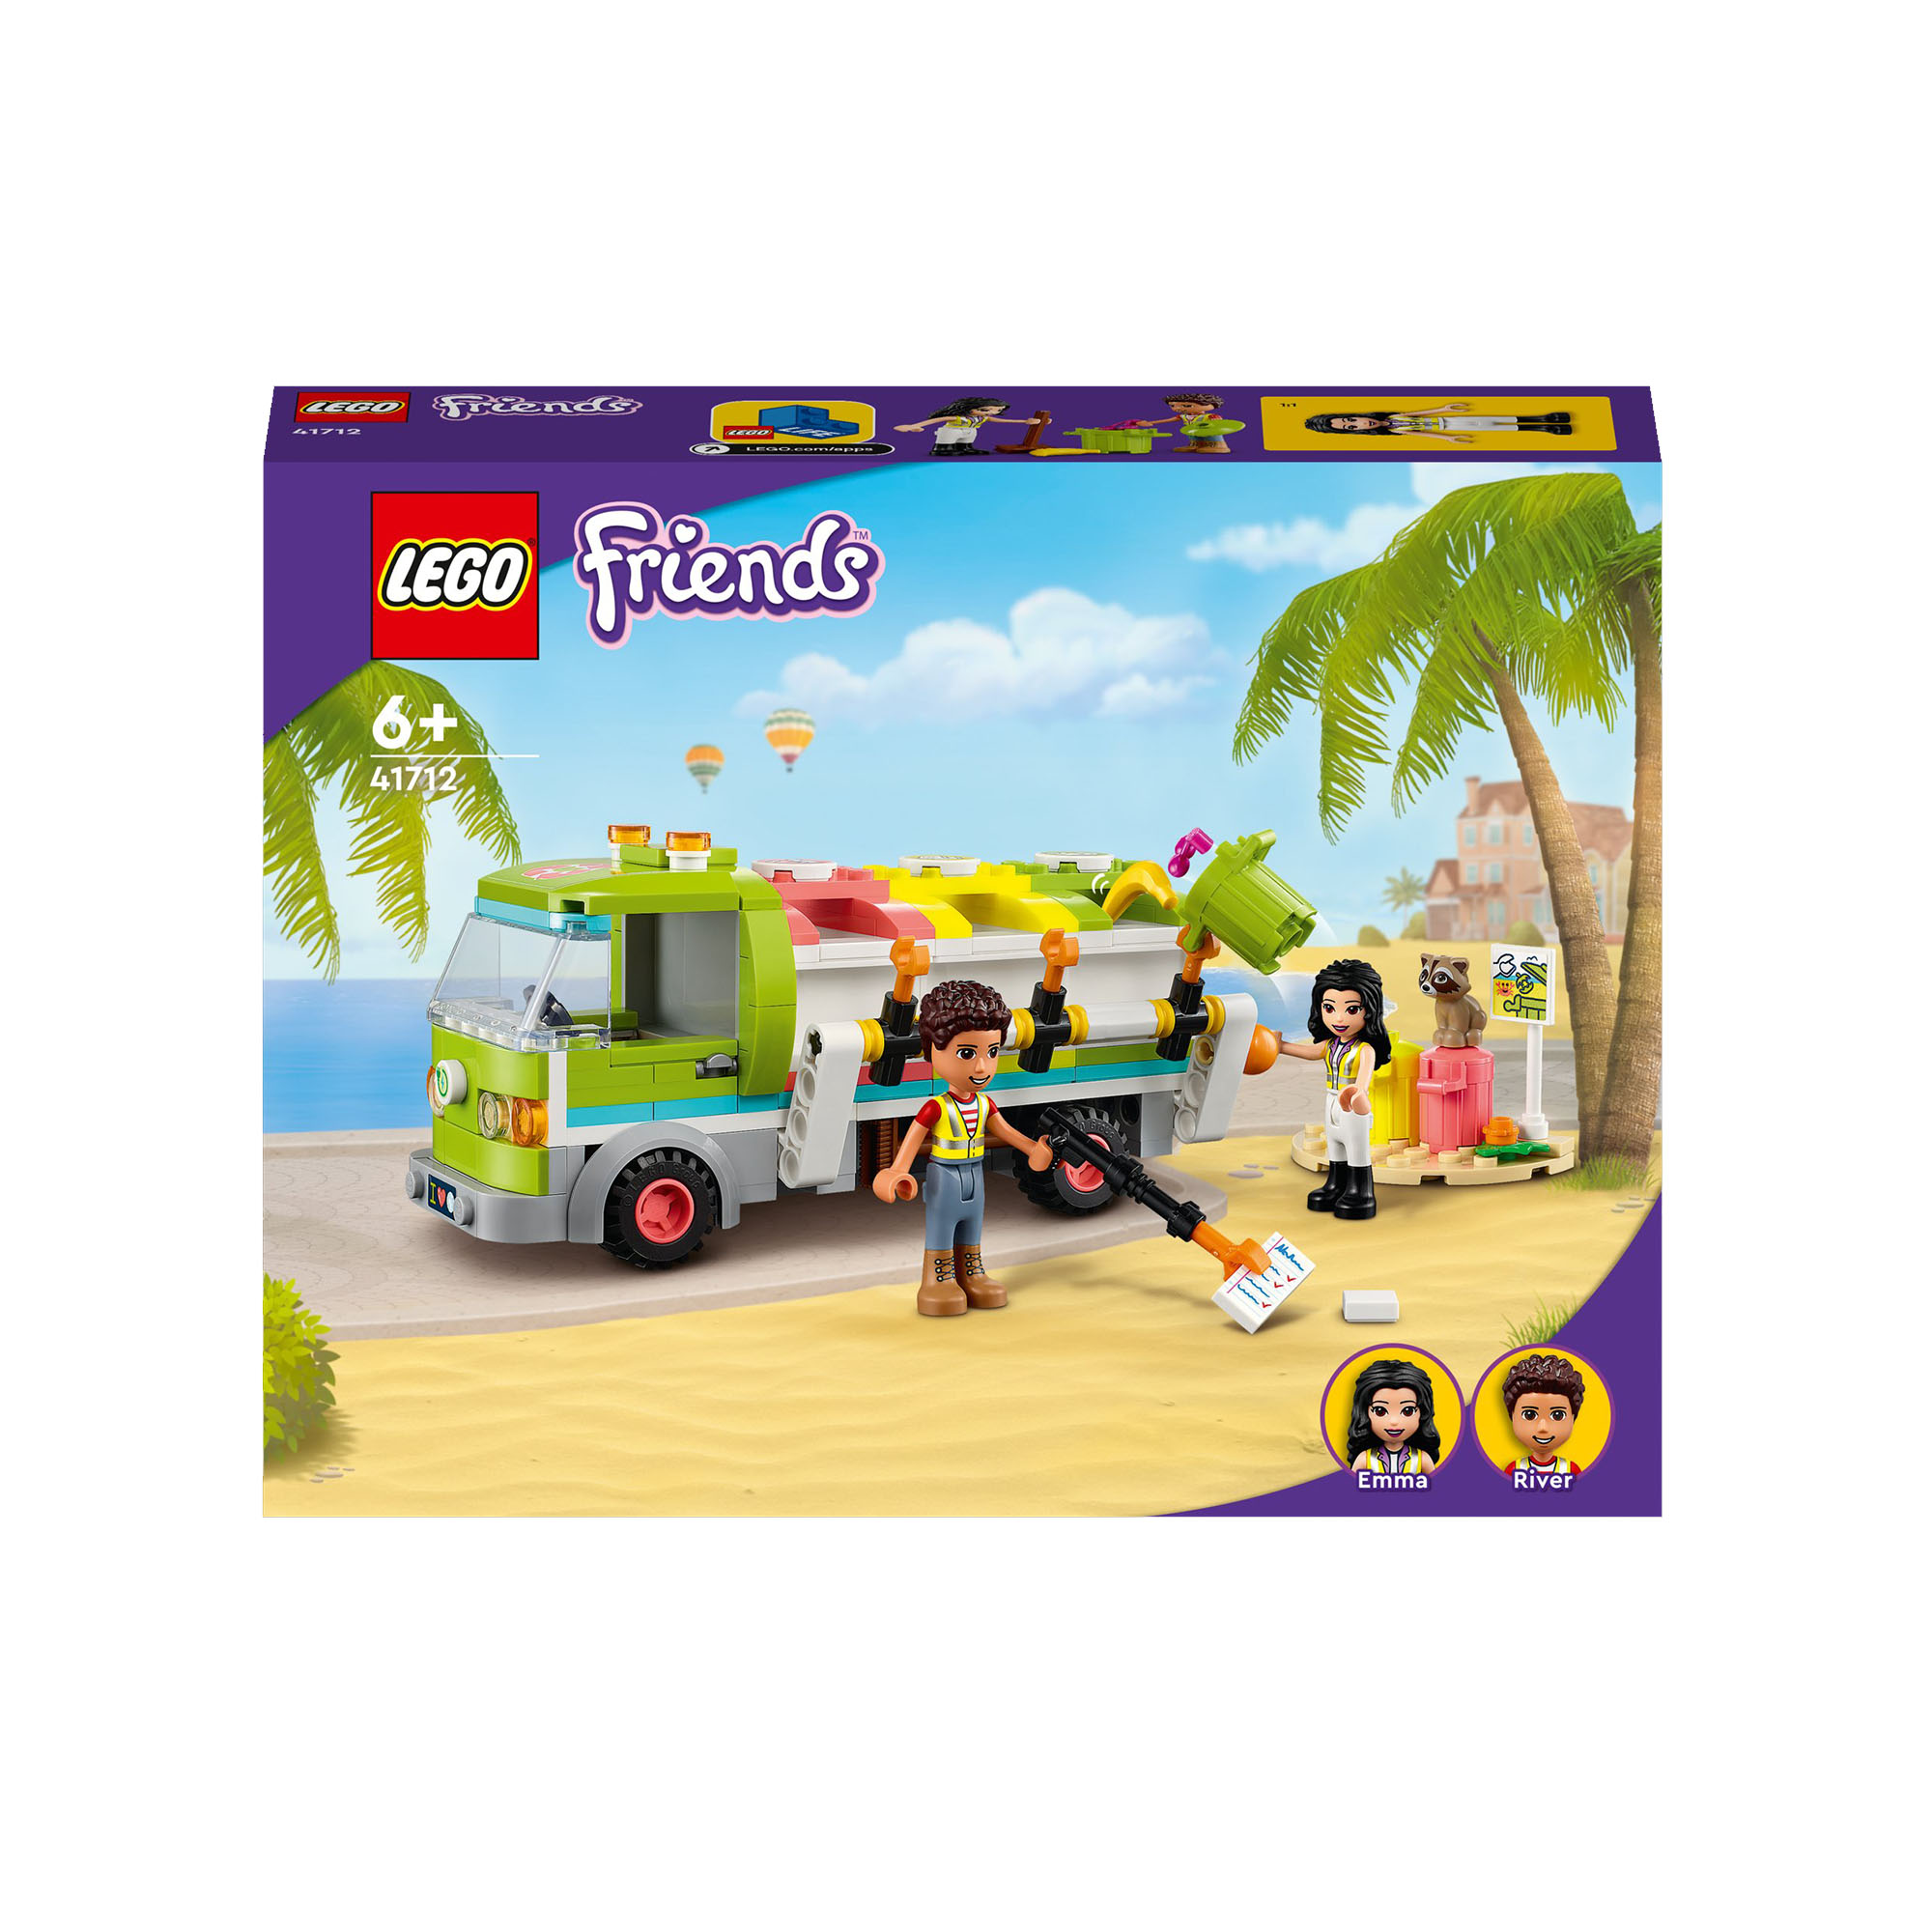 LEGO Friends Camion Riciclaggio Rifiuti, con Mini Bambolina Emma, Set Costruzion 41712, , large